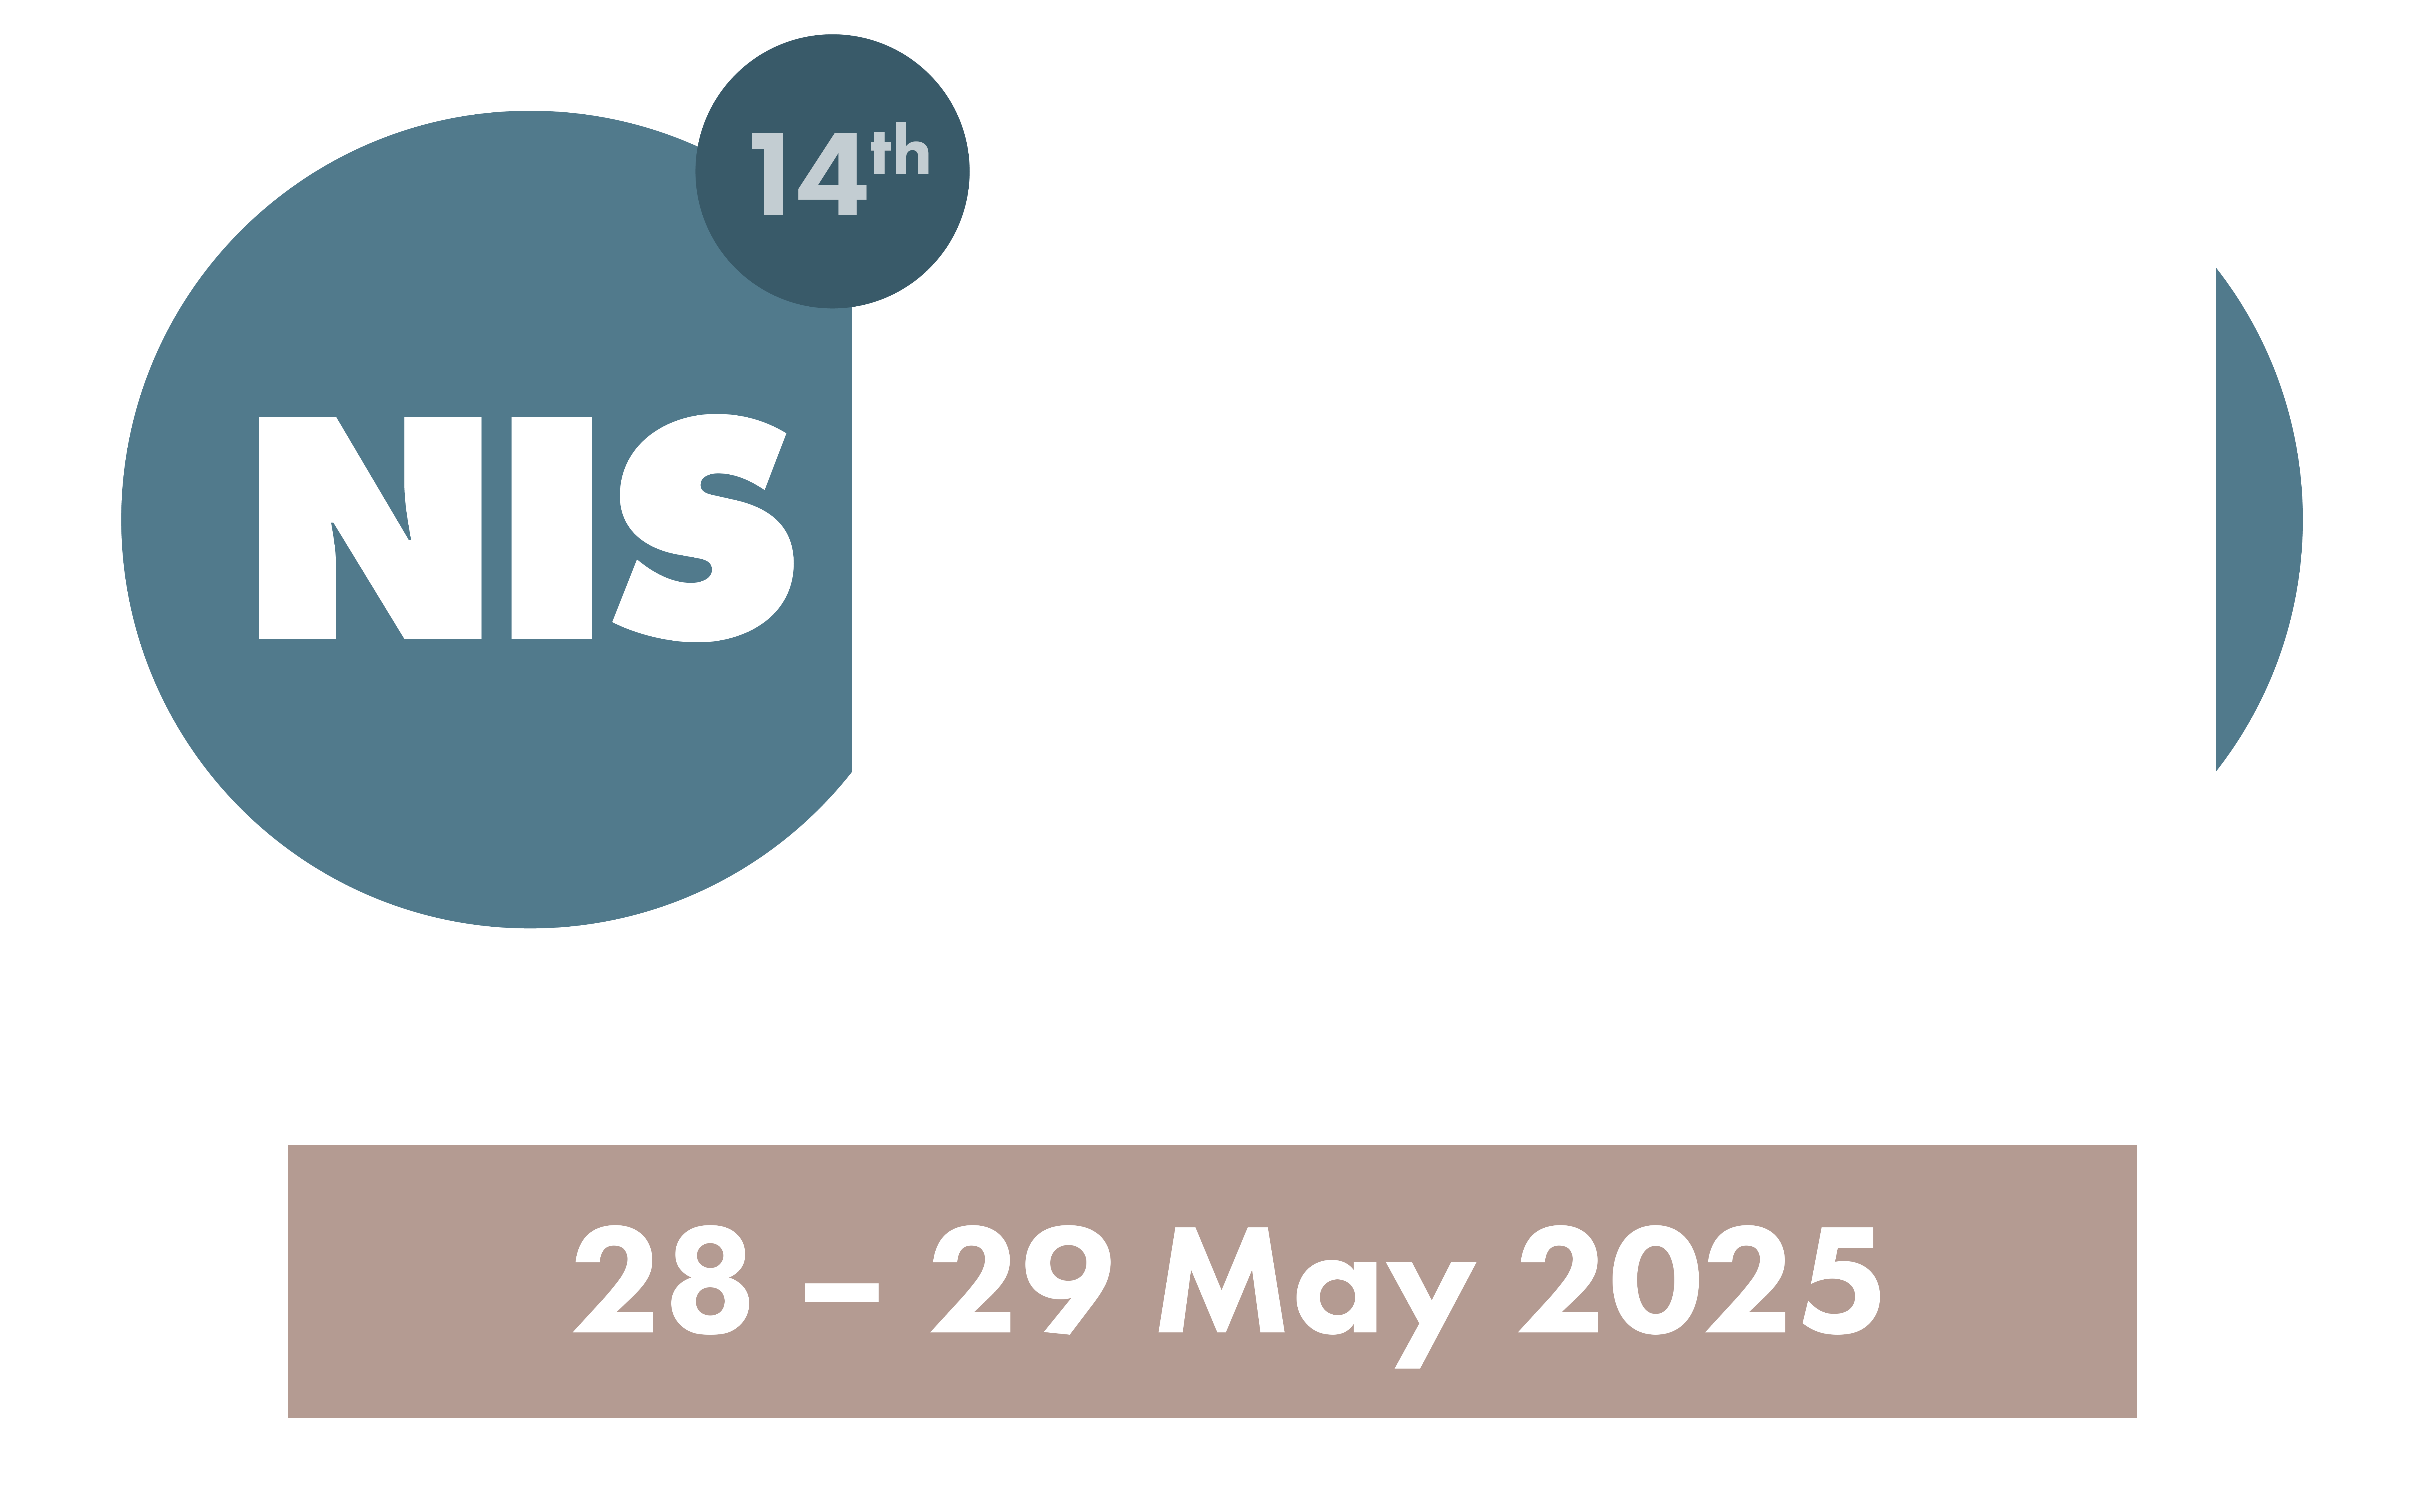 National Investigations Symposium